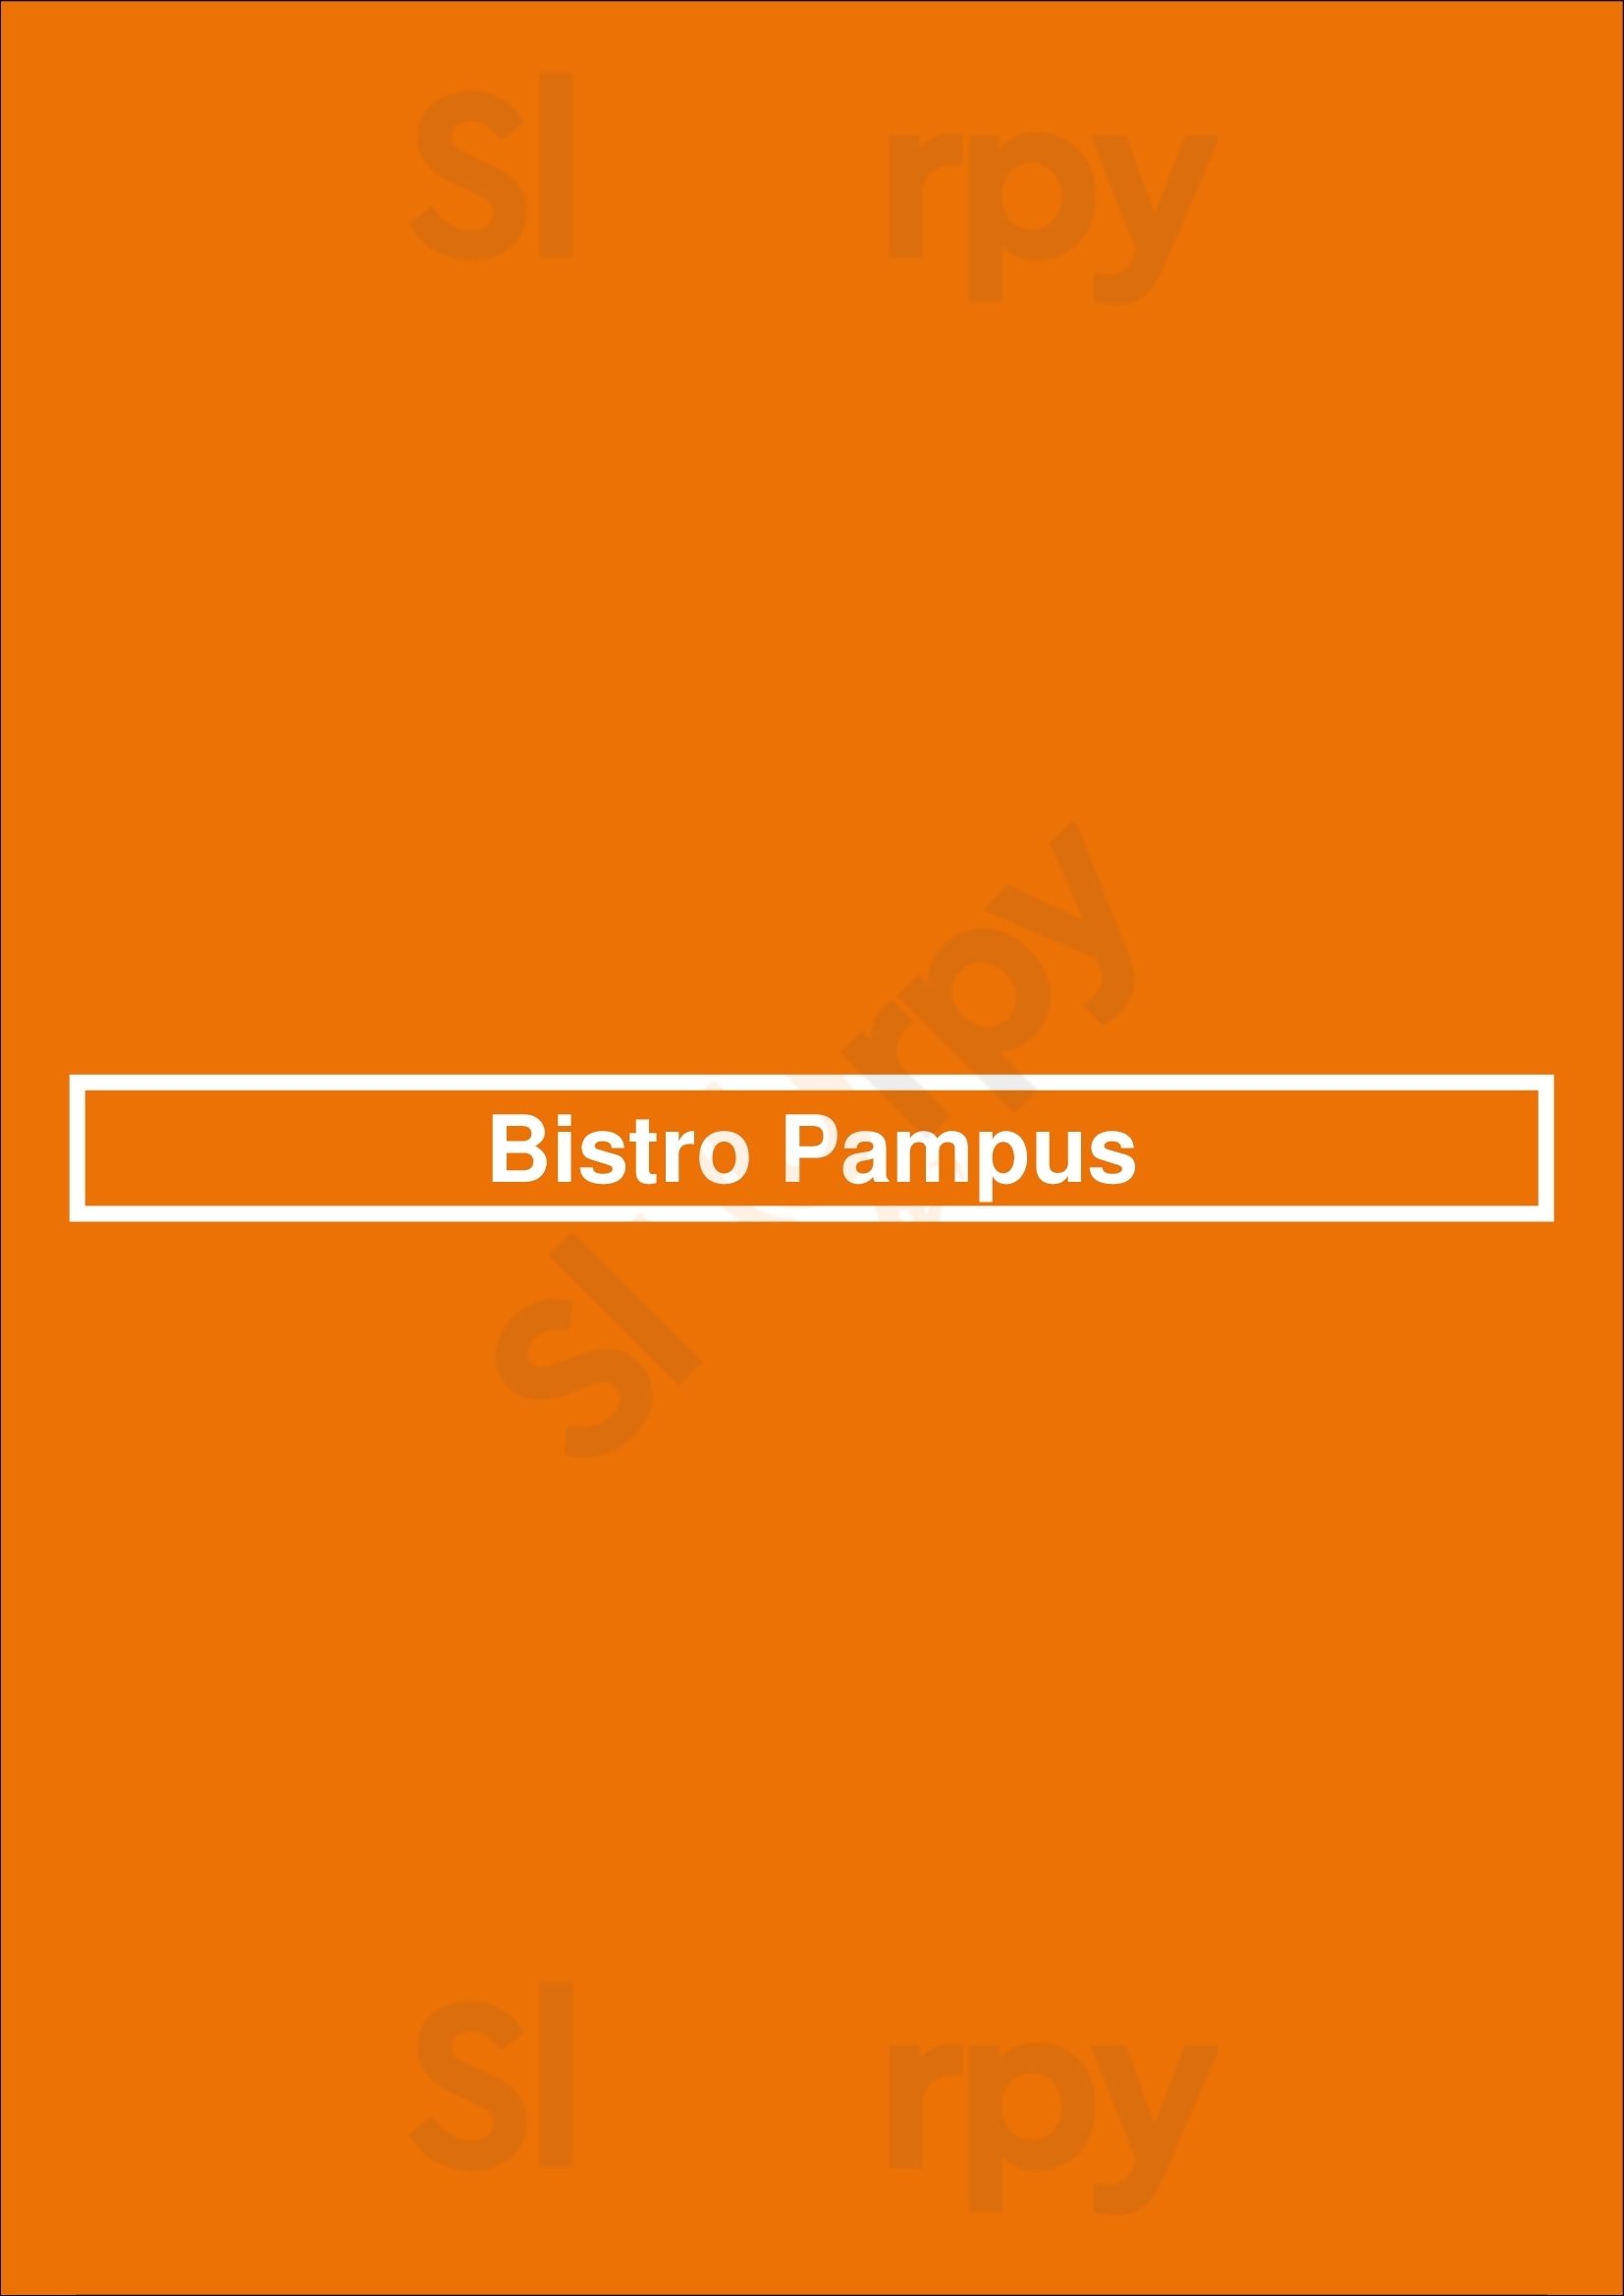 Bistro Pampus Zwolle Menu - 1